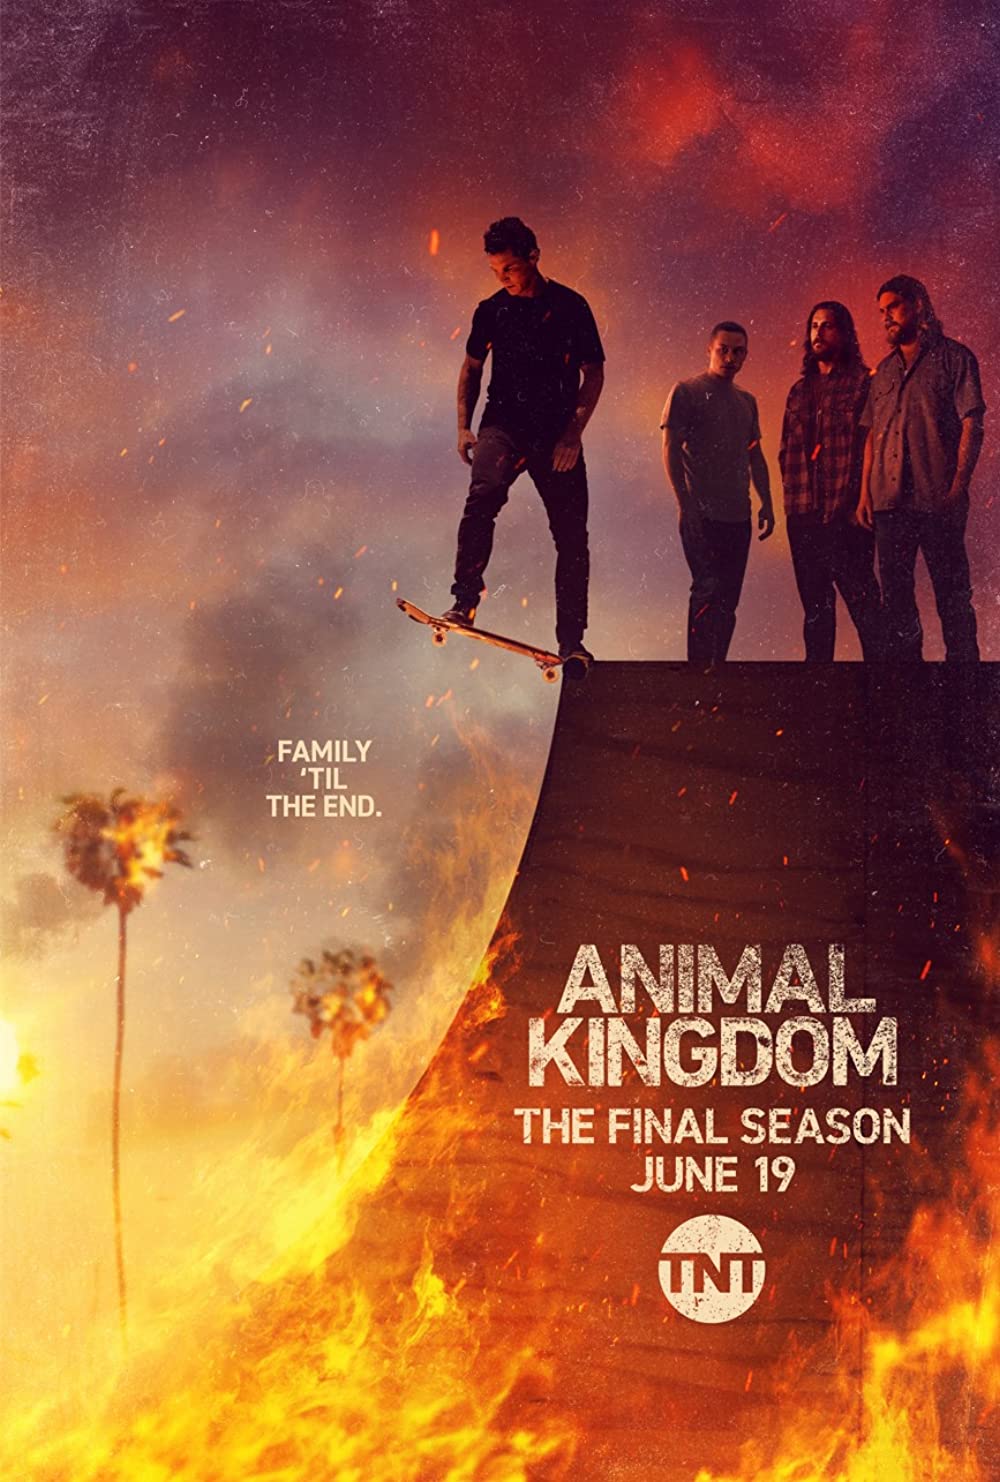 ดูหนังออนไลน์ฟรี Animal Kingdom Season 1 EP.1 แอนนิเมิล คิงด้อม ซีซั่น 1 ตอนที่ 1 (ซับไทย)